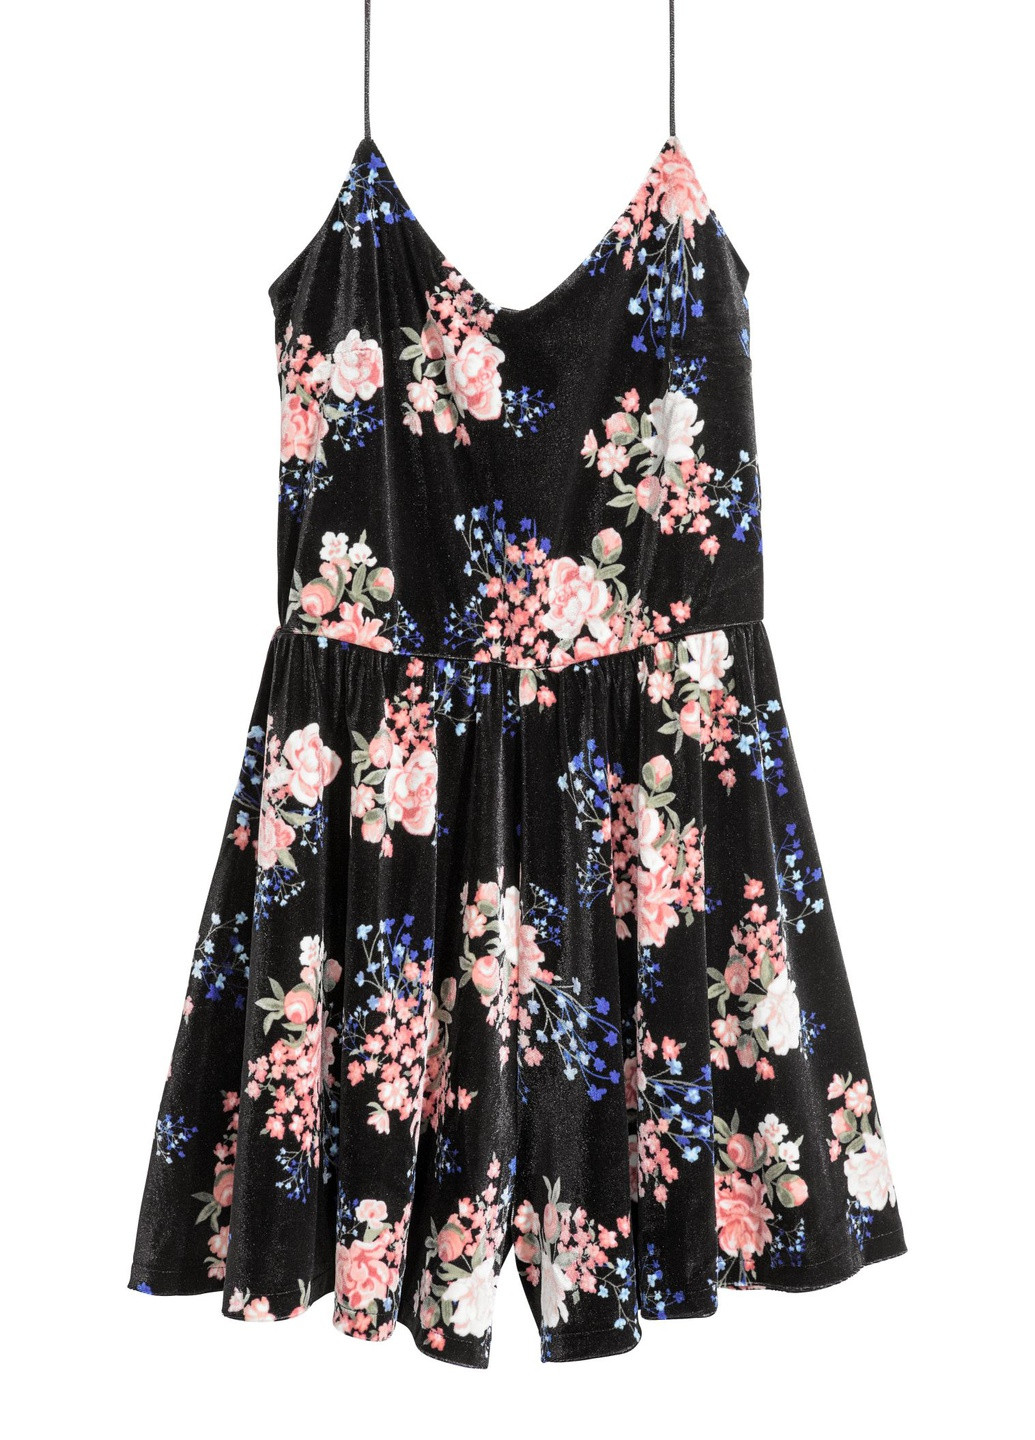 Комбинезон H&M комбинезон-шорты цветочный чёрный вельвет